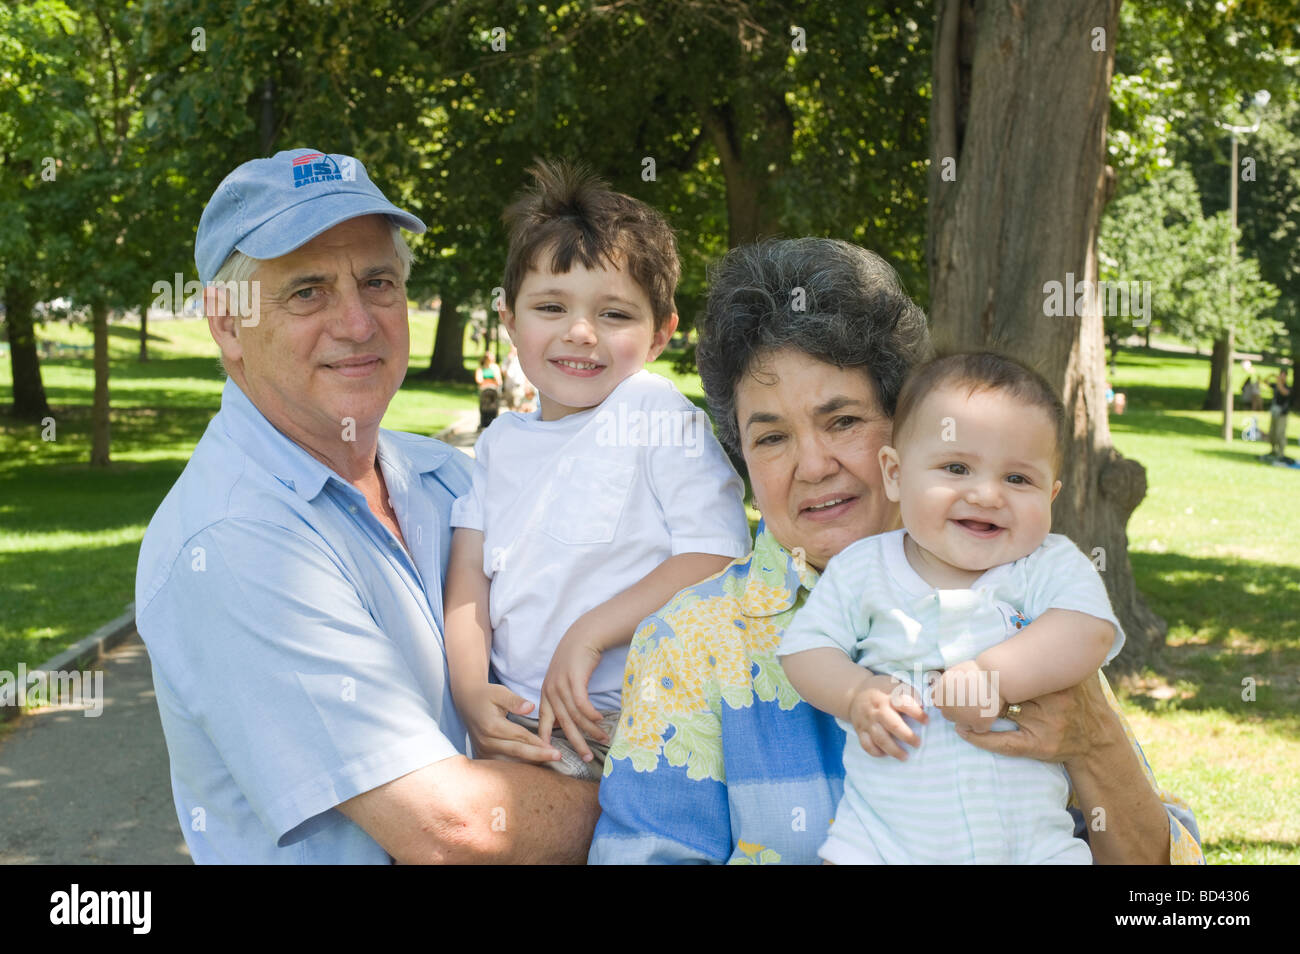 L'origine ethnique mixte (grands-parents - l'homme blanc, femme -hispanic) posent avec leurs petits-enfants dans un parc Banque D'Images